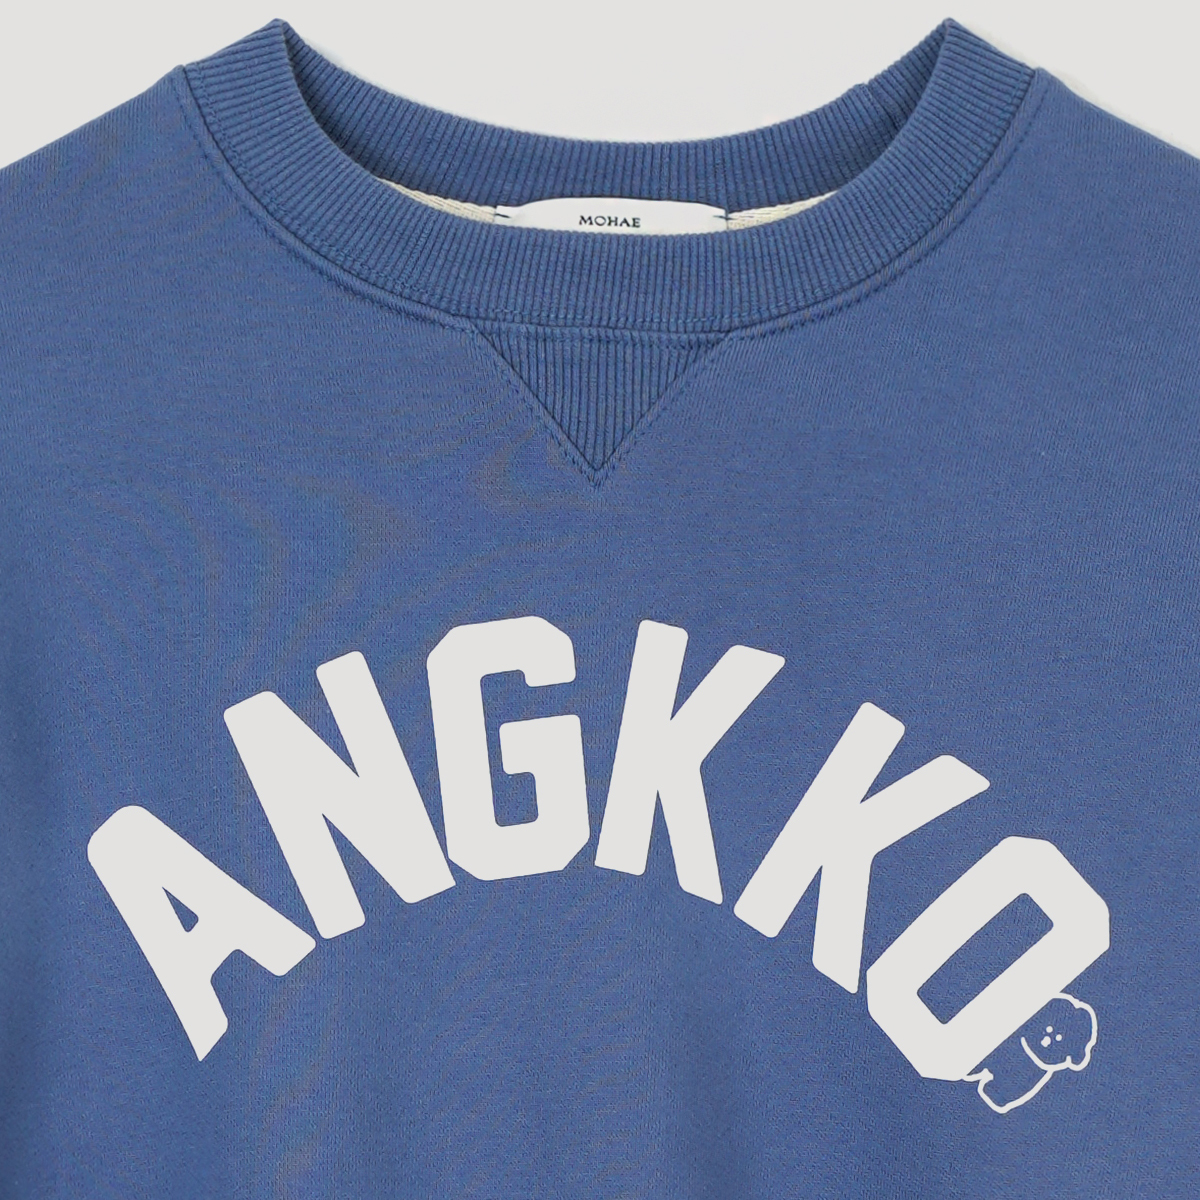 Ankko sweat shirt _ blue